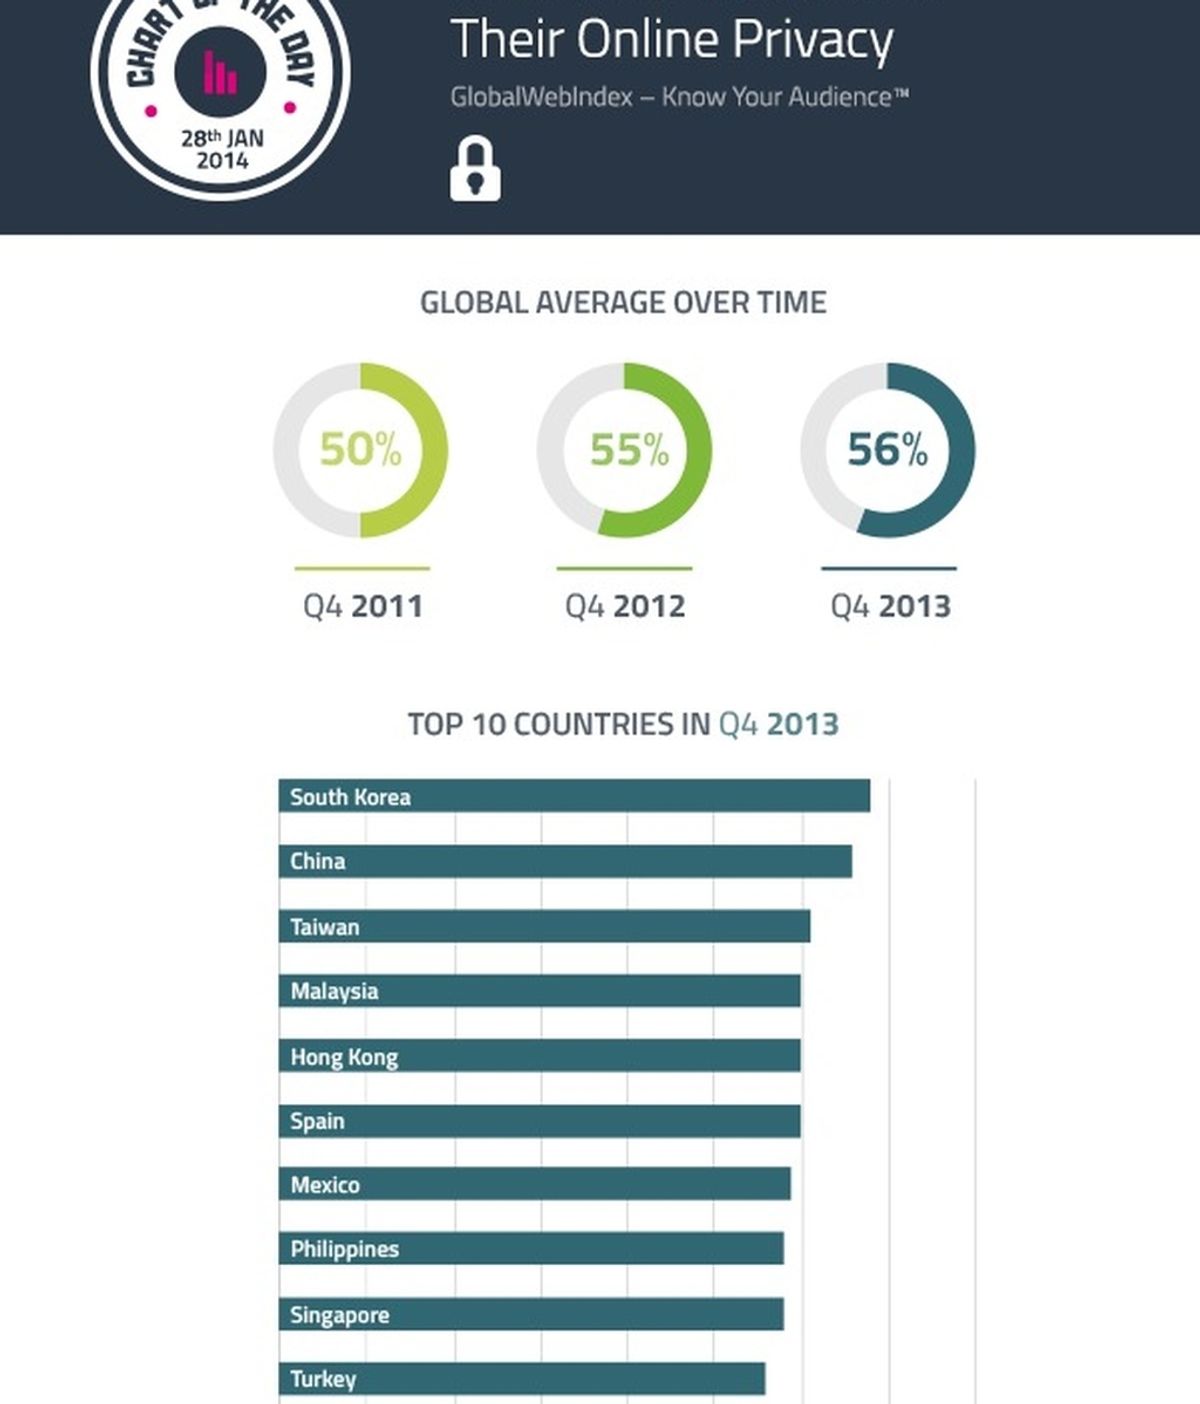 Los diez países más preocupados por su privacidad online